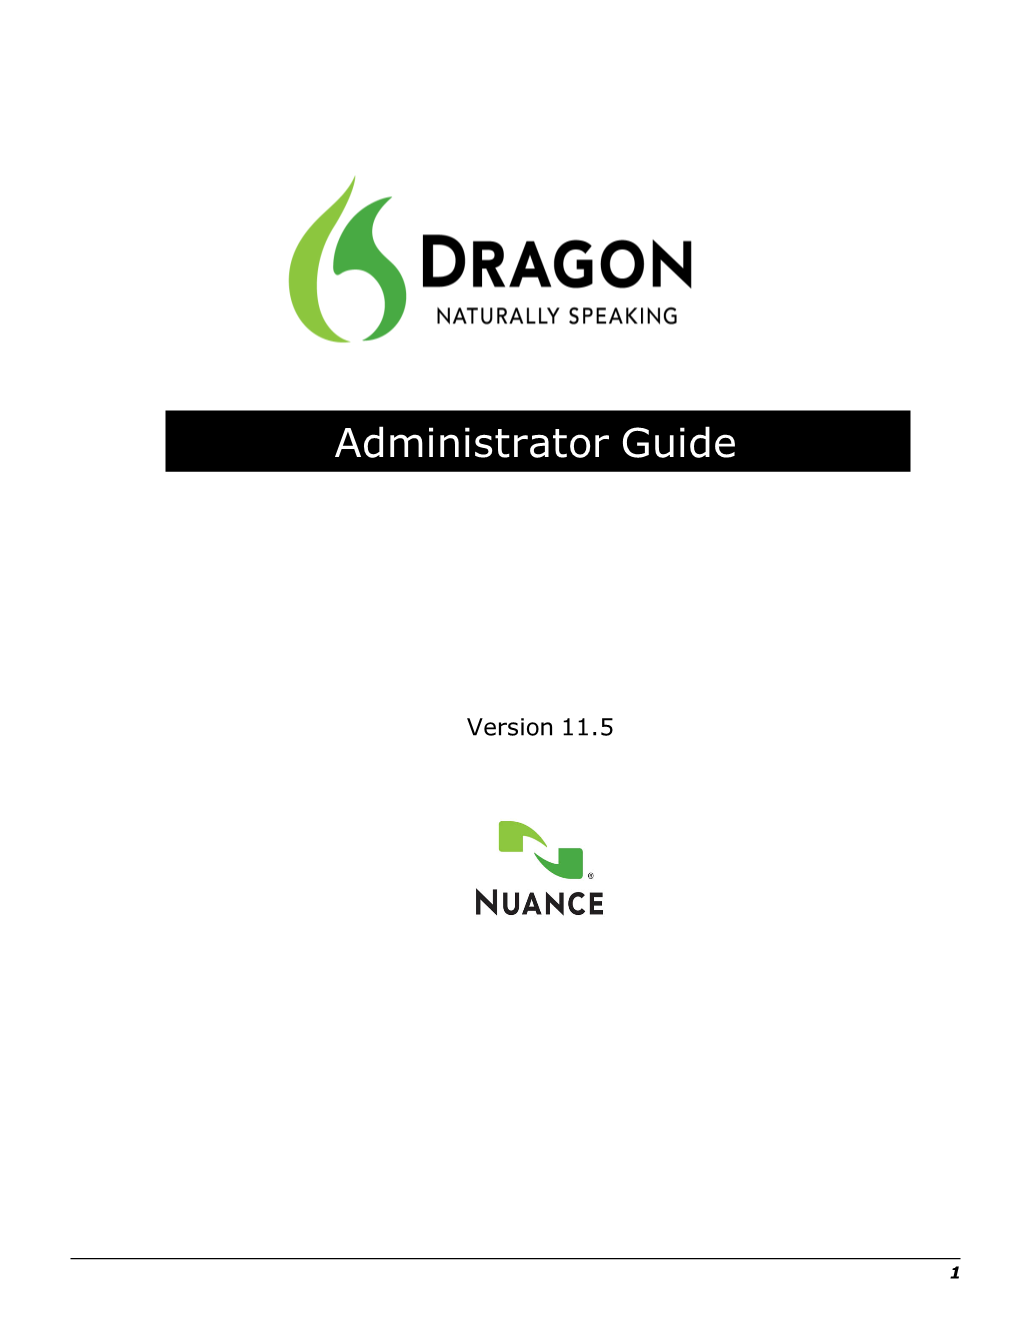 Dragon Naturallyspeaking 11.5 Administrator Guide